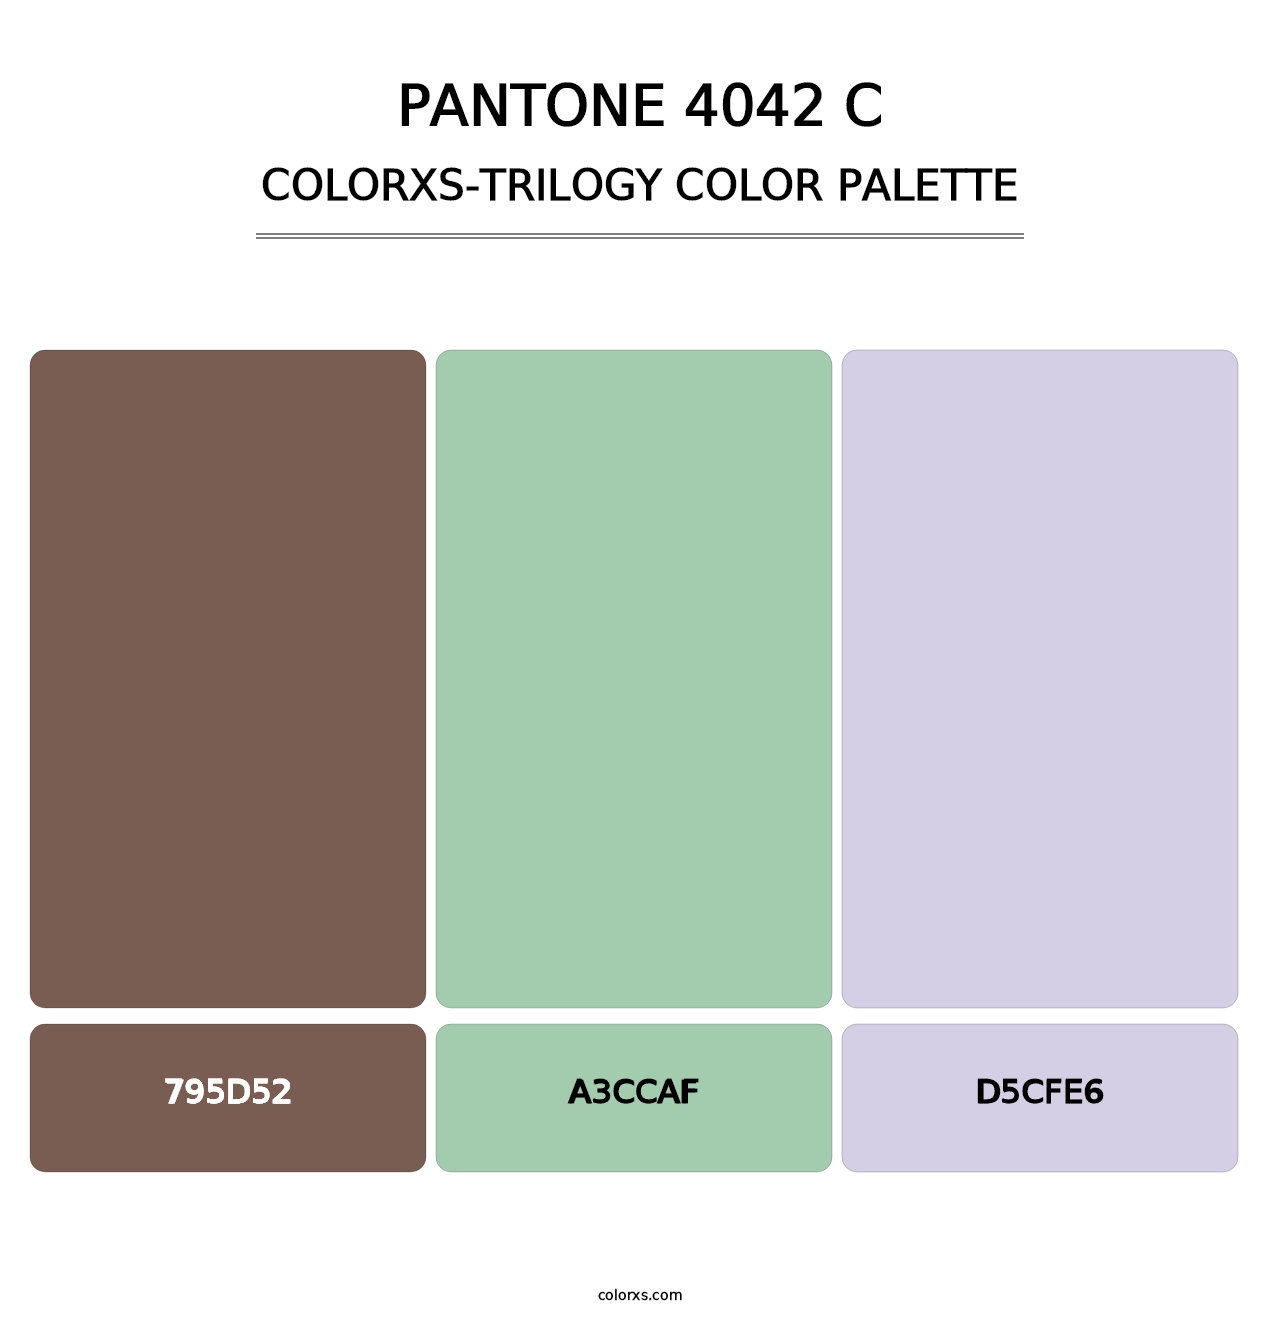 PANTONE 4042 C - Colorxs Trilogy Palette